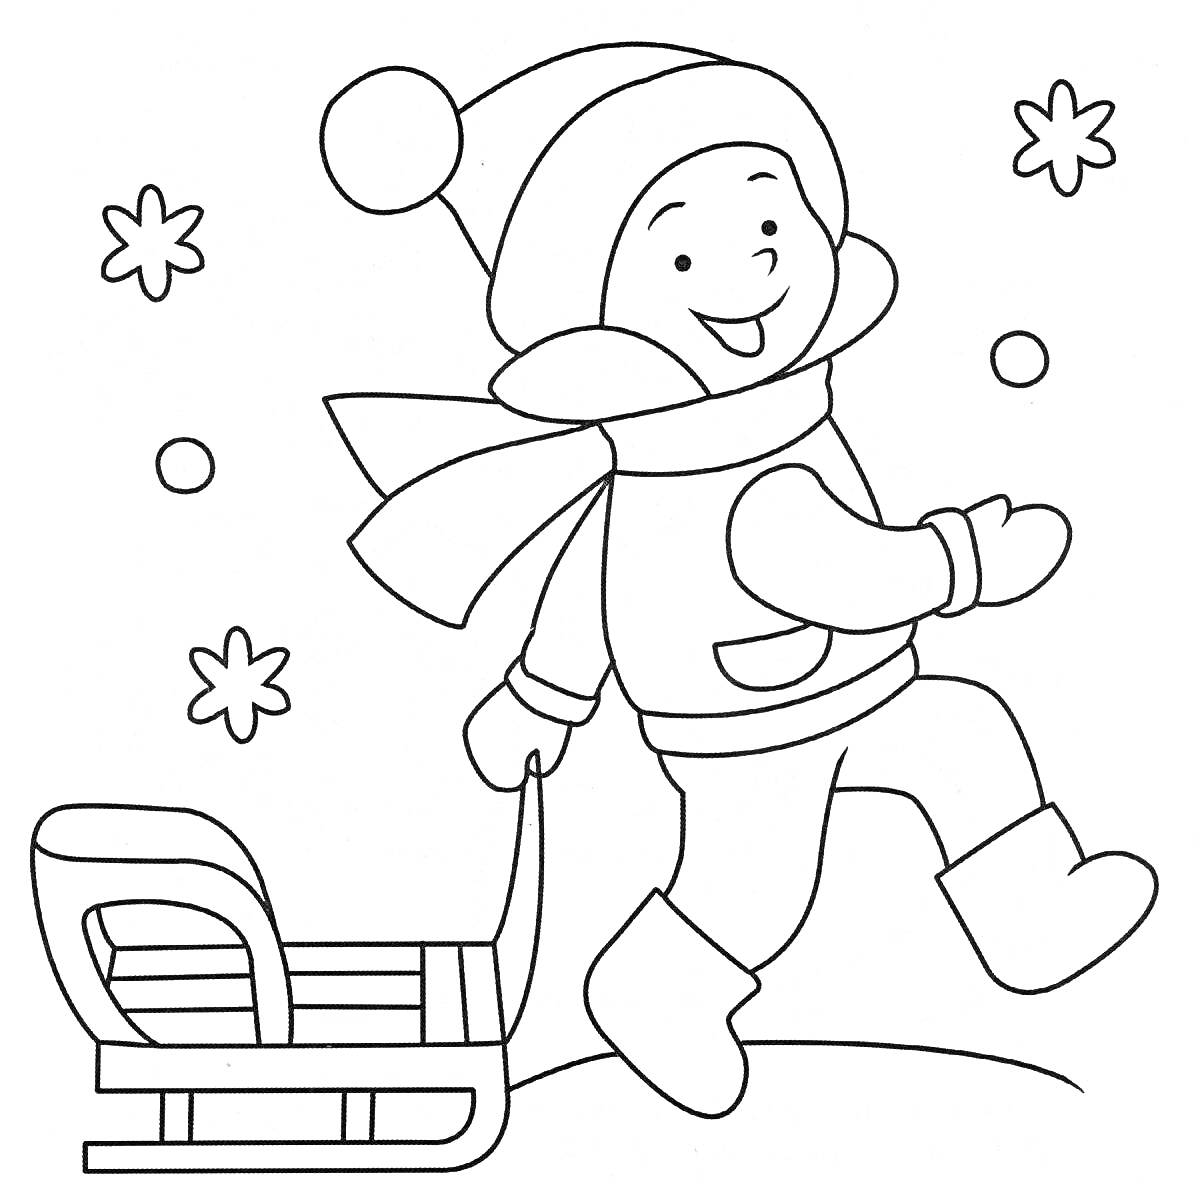 Раскраска Ребенок в зимней одежде с санками, снеговик и снежинки